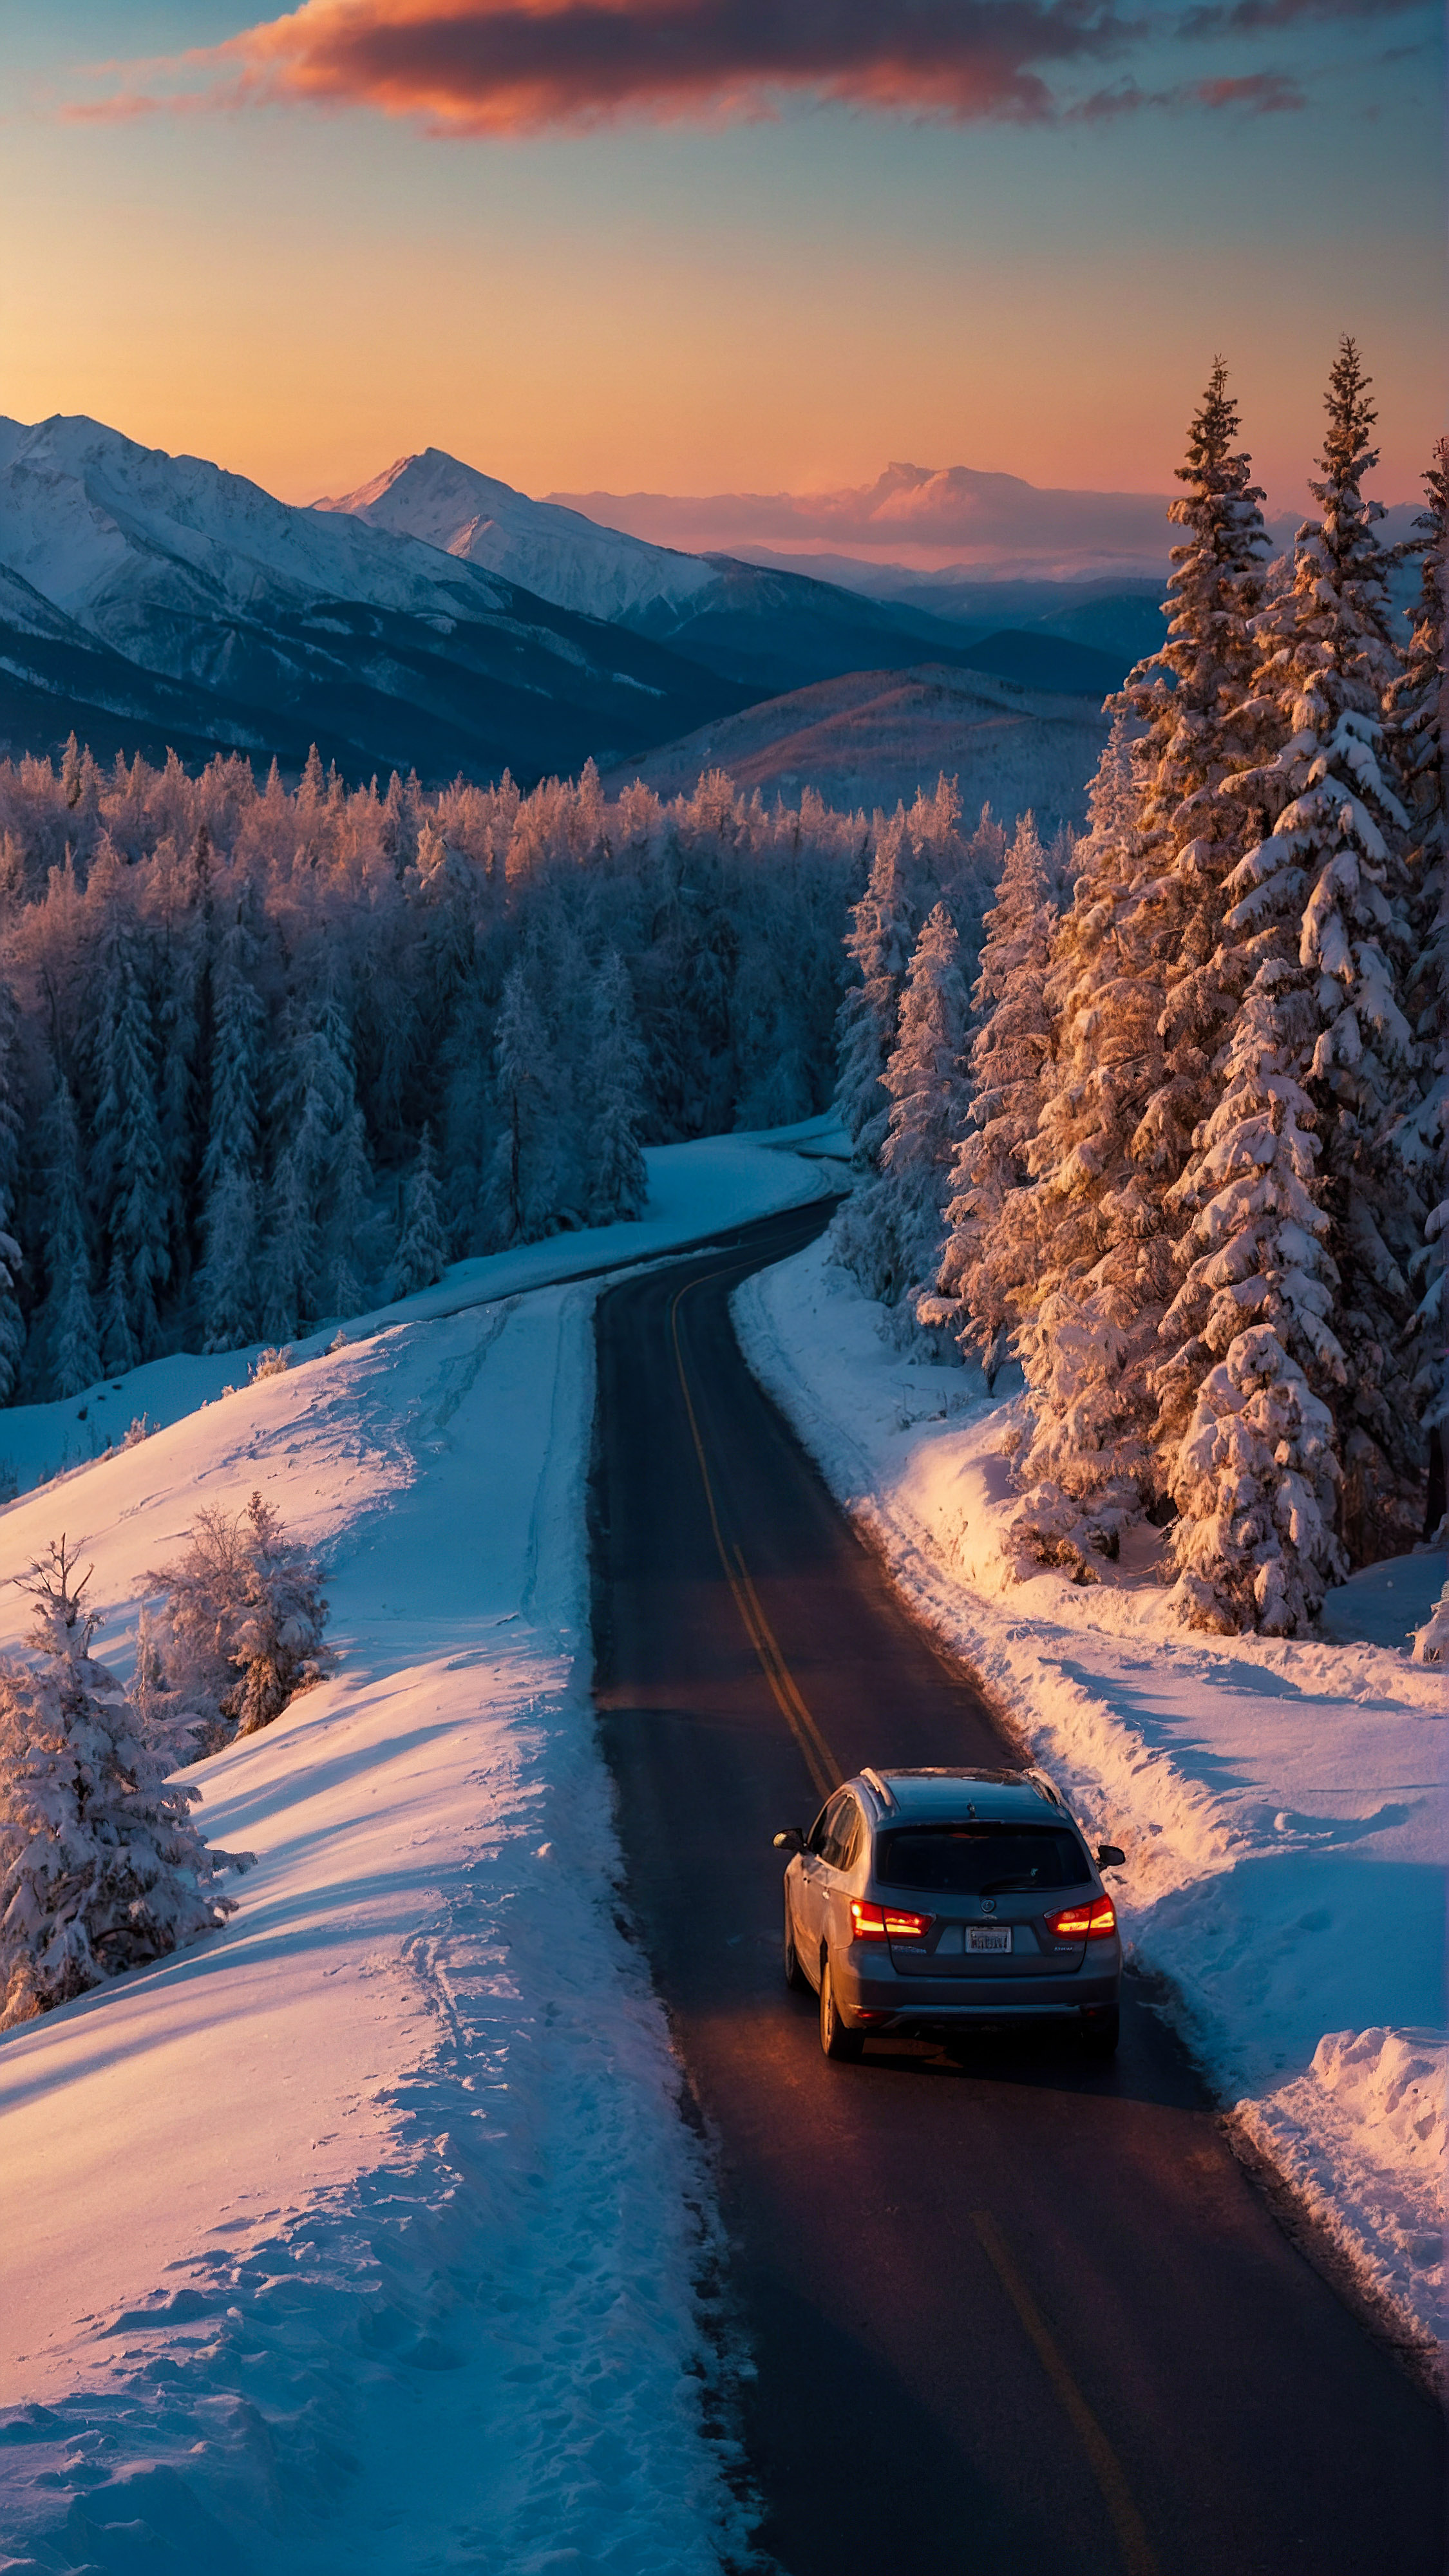 Téléchargez ce fond d'écran iPhone esthétique style, un paysage d'hiver vibrant au crépuscule, avec une route sinueuse avec une voiture en déplacement, entourée d'arbres et de montagnes couverts de neige sous la lueur du soleil couchant. 